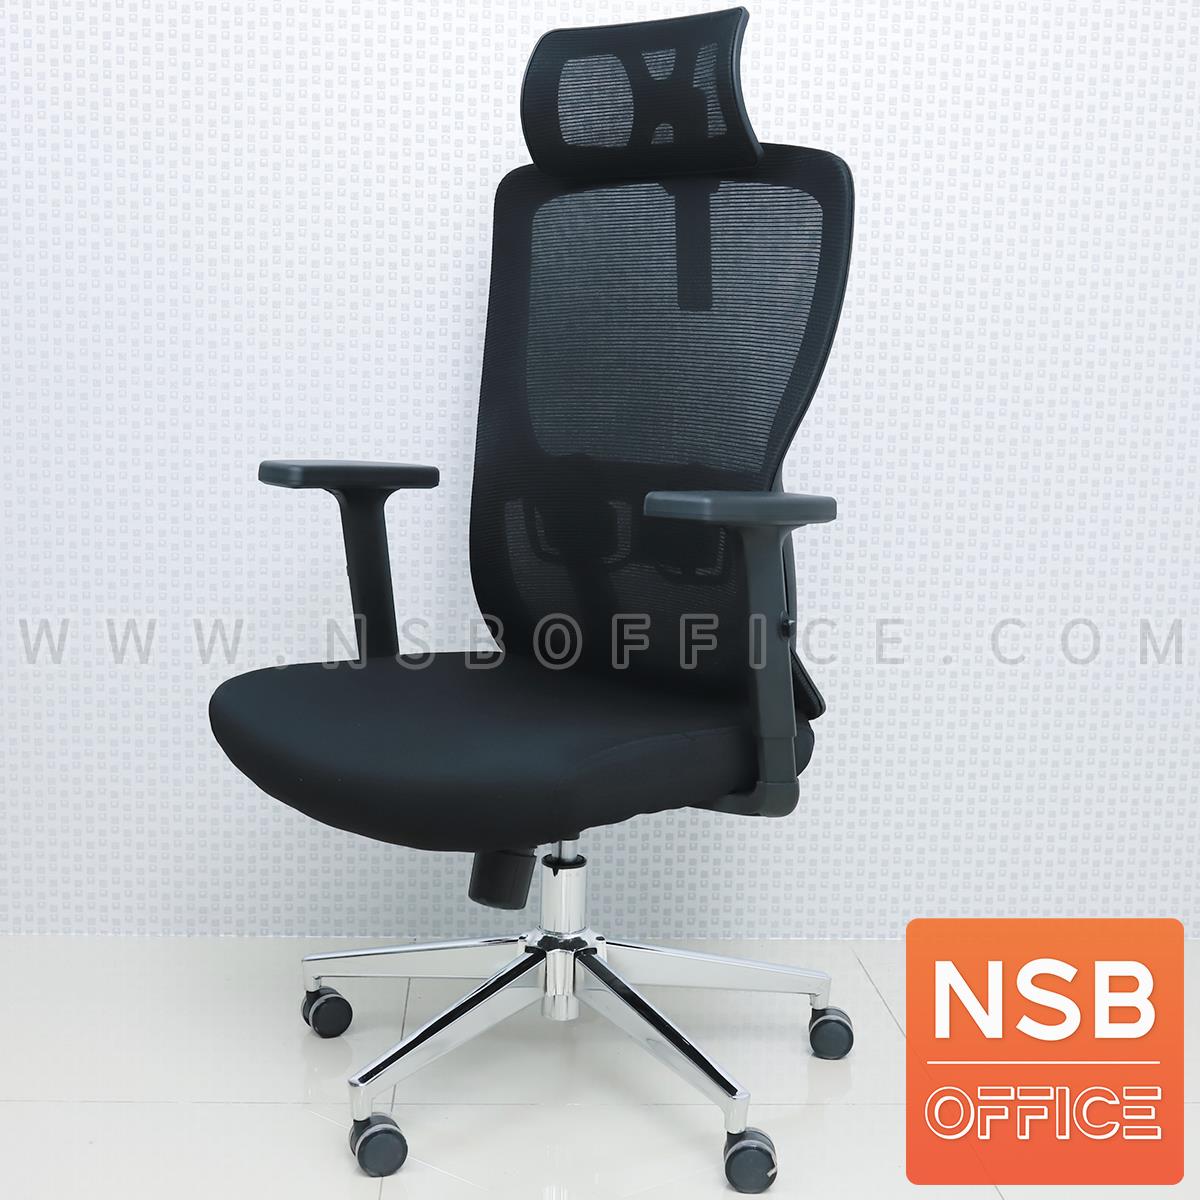 B28A136:เก้าอี้ผู้บริหารหลังเน็ต รุ่น Newham (นิวแฮม)  ขาเหล็กชุบโครเมี่ยม